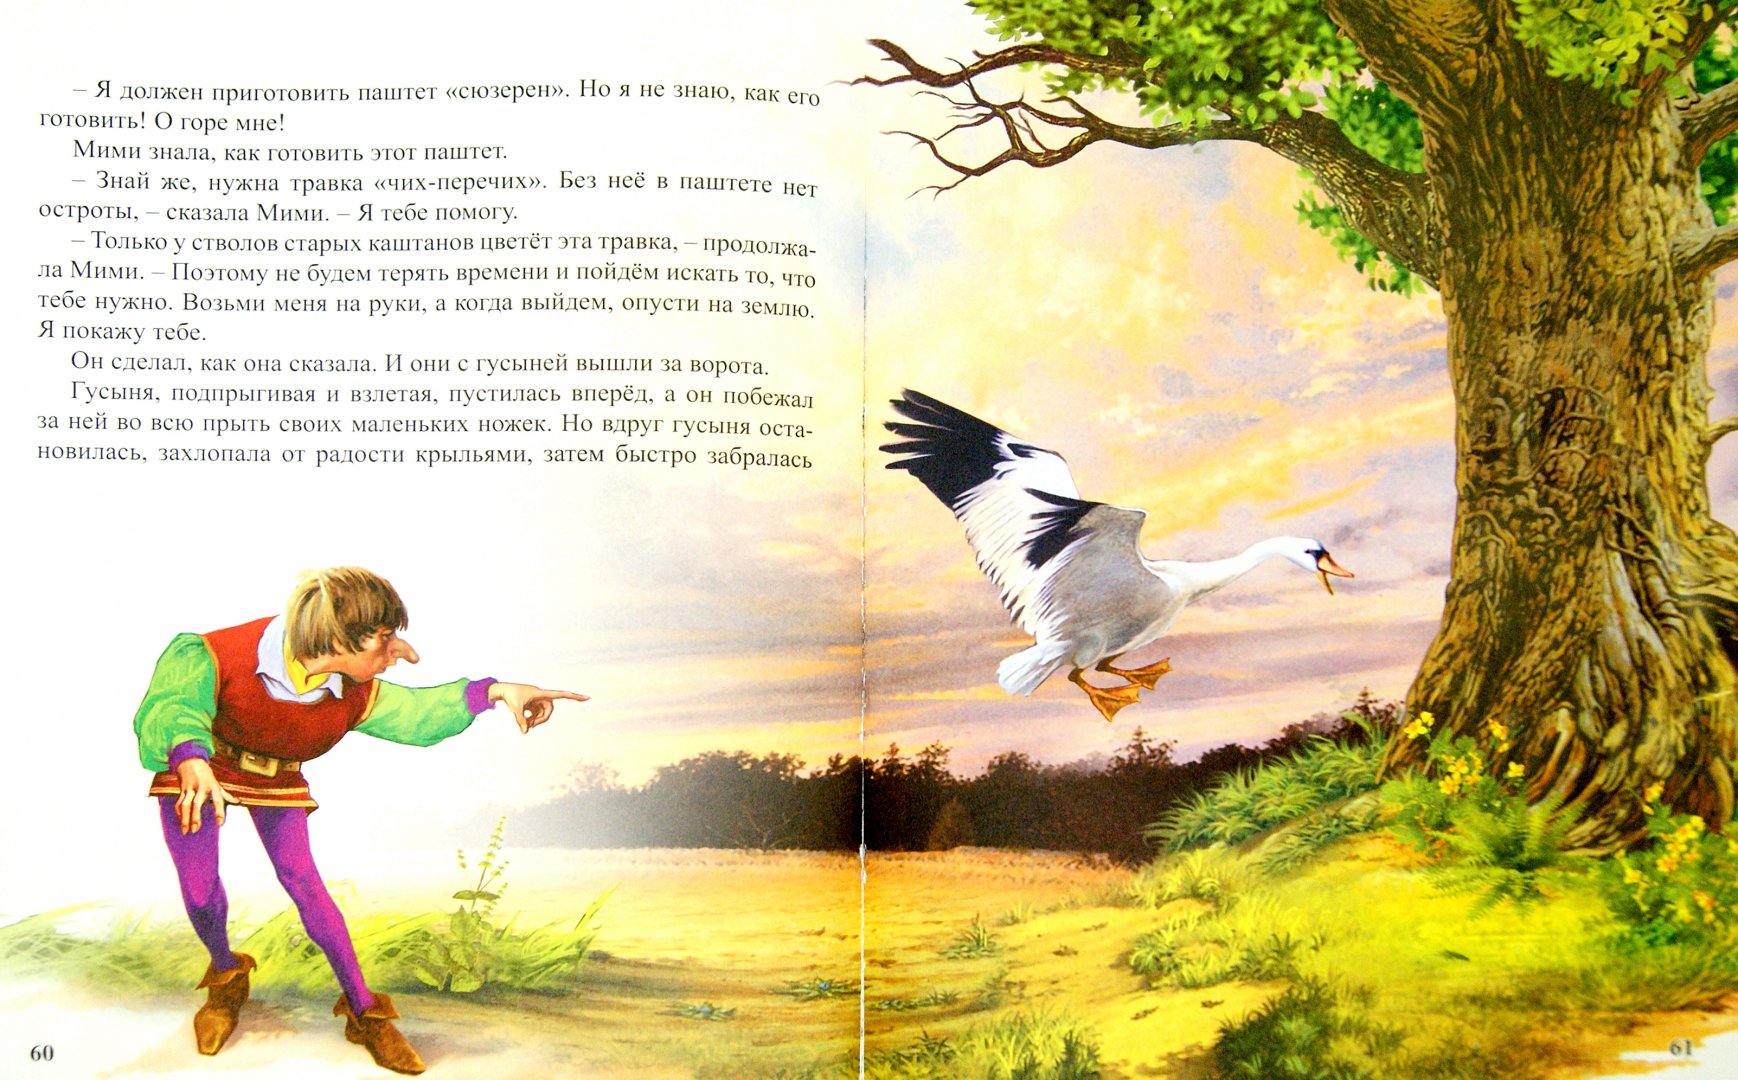 Иллюстрация 1 из 17 для Лучшие волшебные сказки | Лабиринт - книги. Источник: Лабиринт